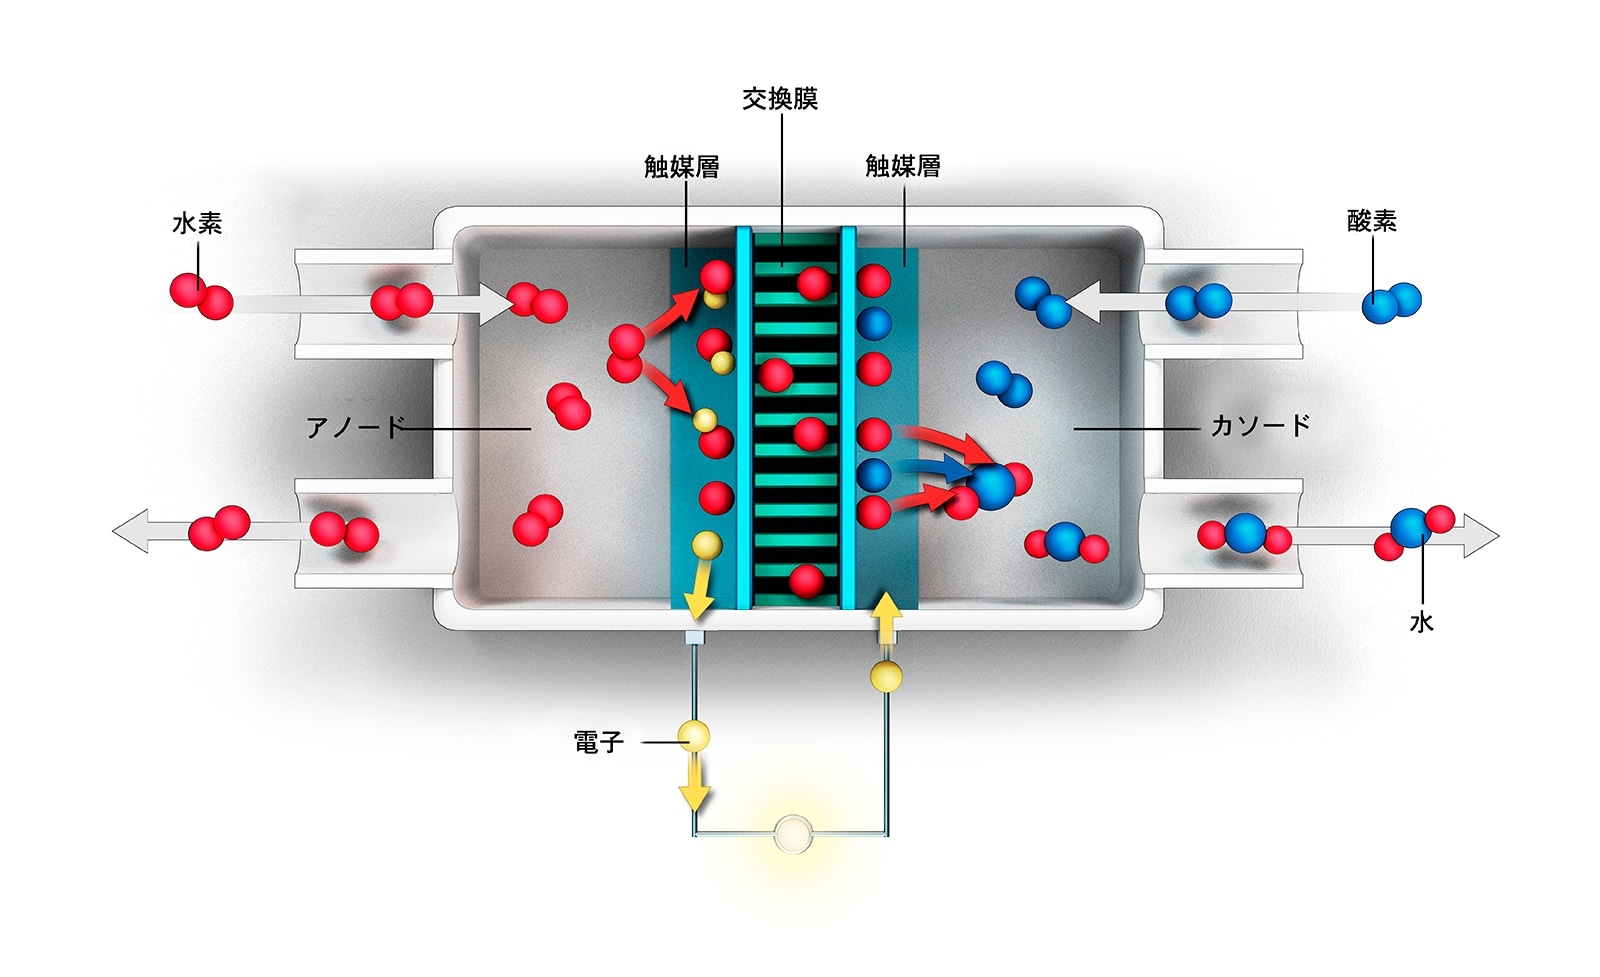 水素燃料電池の模式図。供給された水素（対になった赤い球）は、触媒層でプロトン（赤い球）と電子（黄色い球）に分離される。電子の流れによって電流が発生し、この電流が自動車のエネルギー源となる。プロトンは交換膜（中央）を通って反対側の触媒層に移動し、電子と空気中の酸素（青い球）と結合して水蒸気を生成する。一連の過程では水しか排出されない。